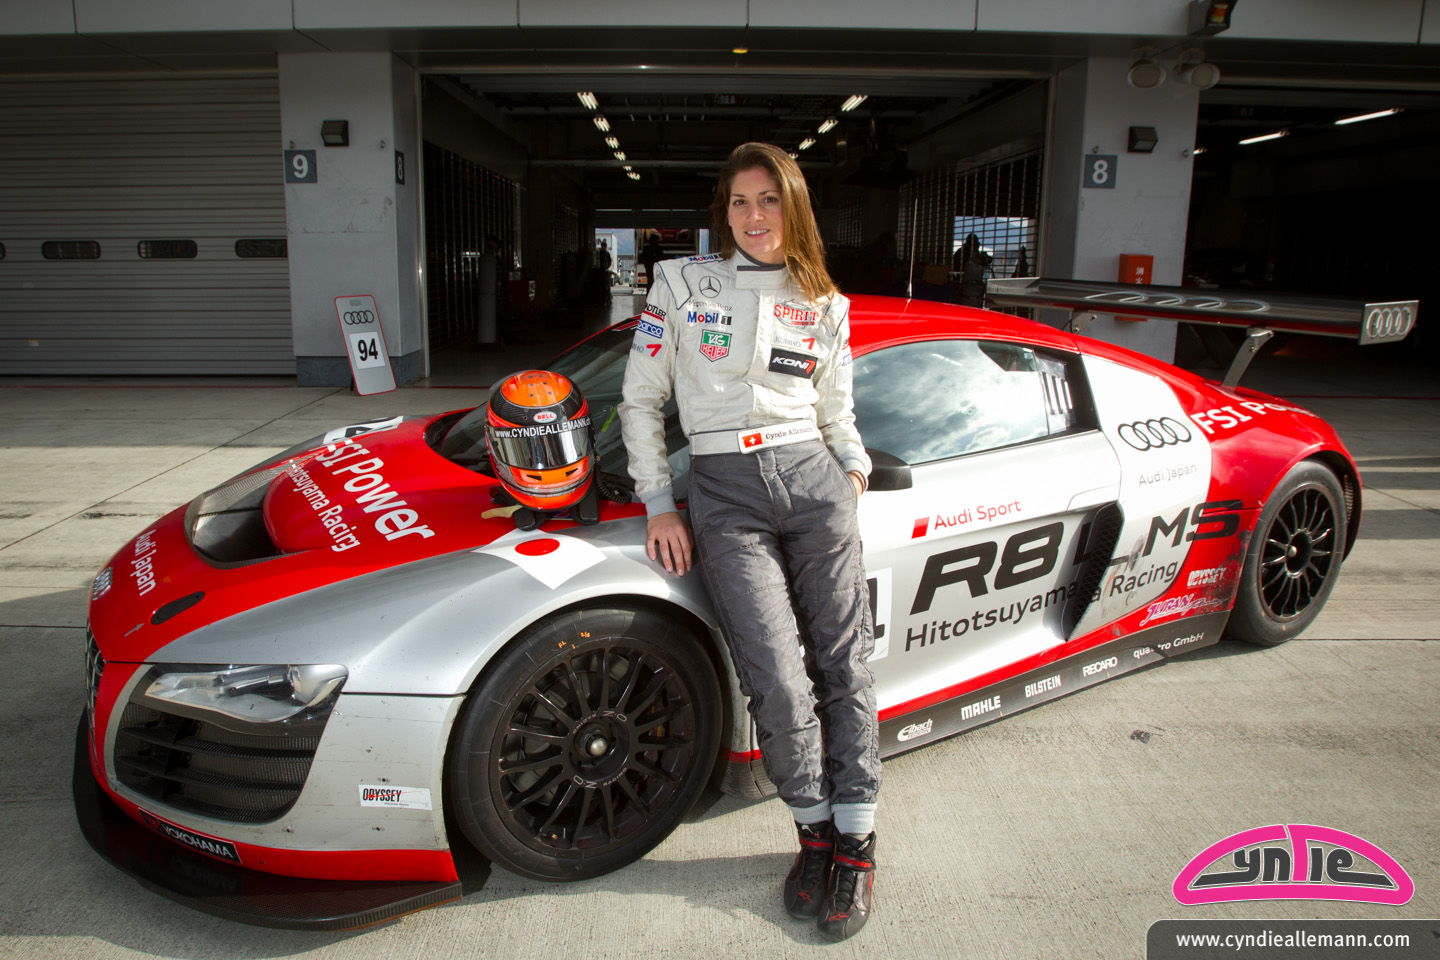 Rêves japonais: Cyndie Allemann va courir avec Hitotsuyama Racing dans le Super GT en 2012